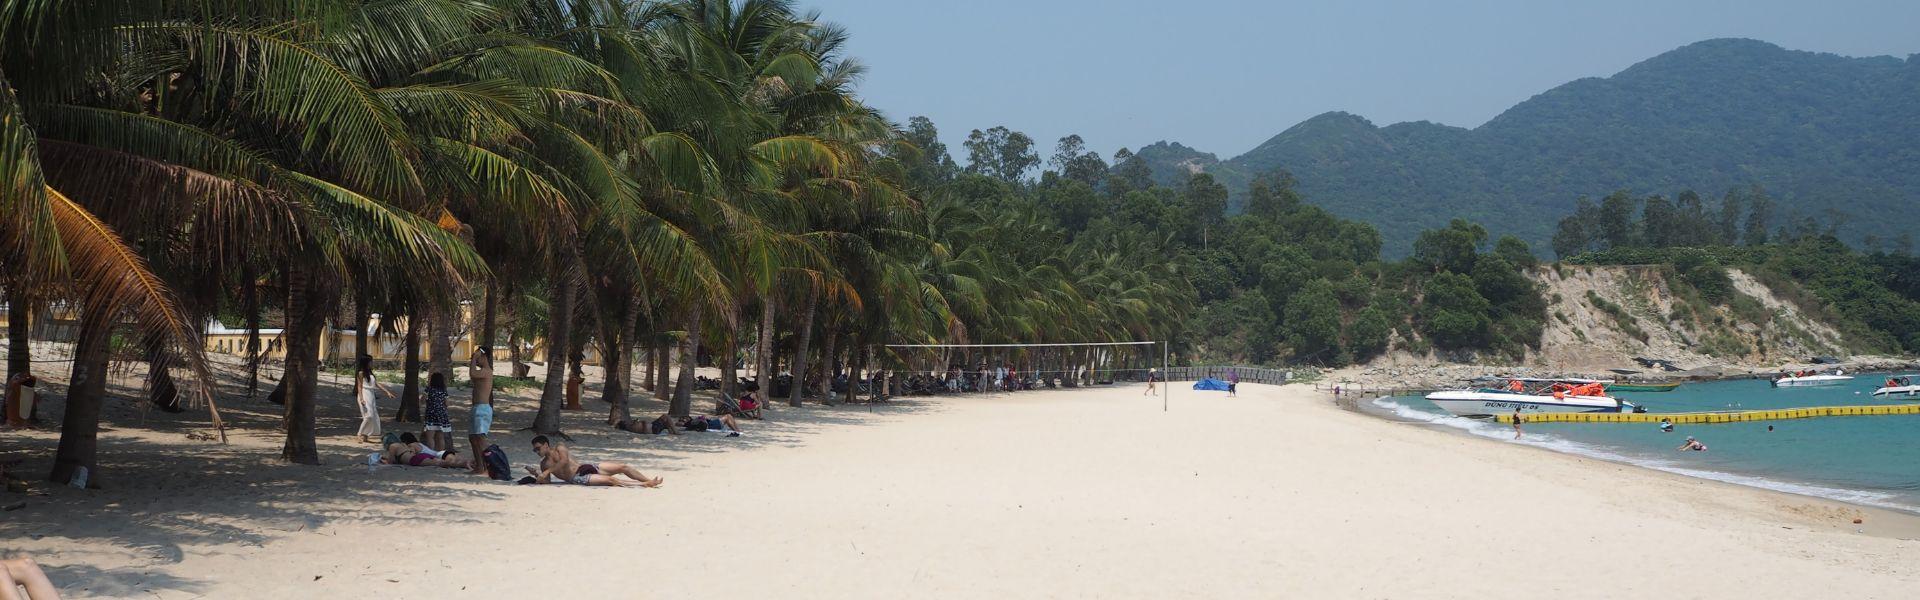 Guide de voyage, infos practiques à Phu Quoc